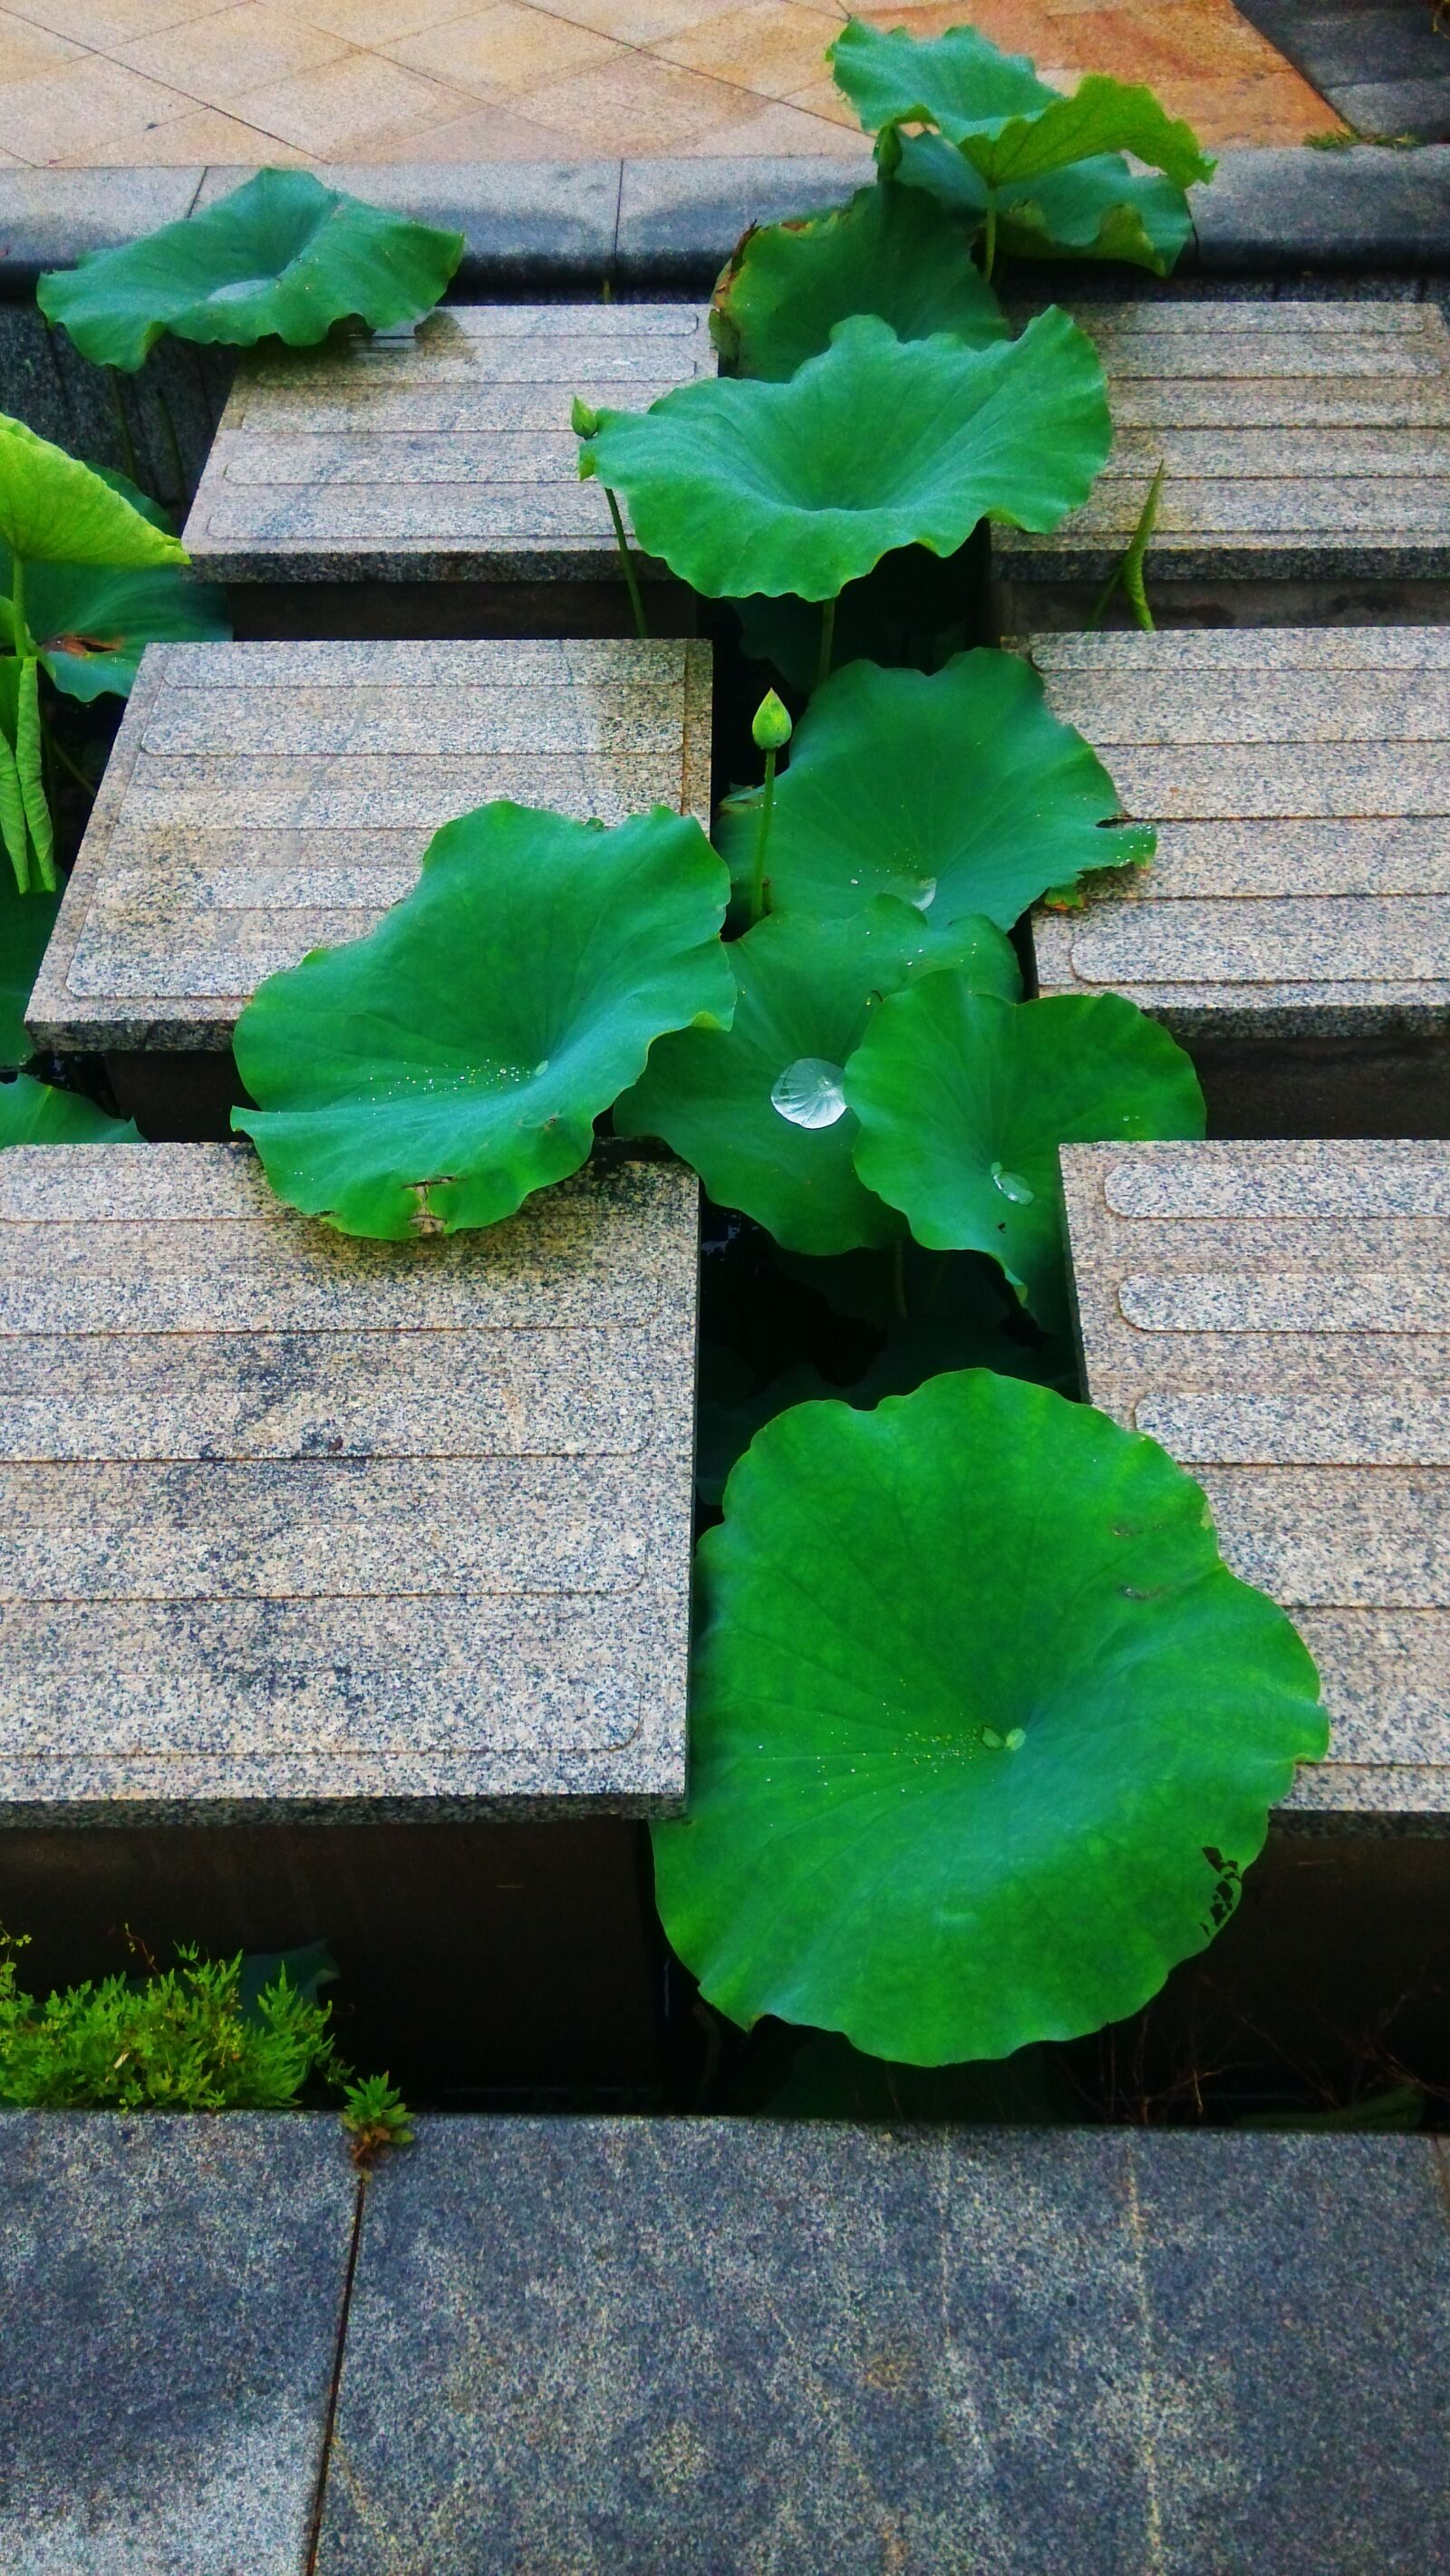 Xiaomi MI3 sample photo. Lotus leaf, lane, summer photography